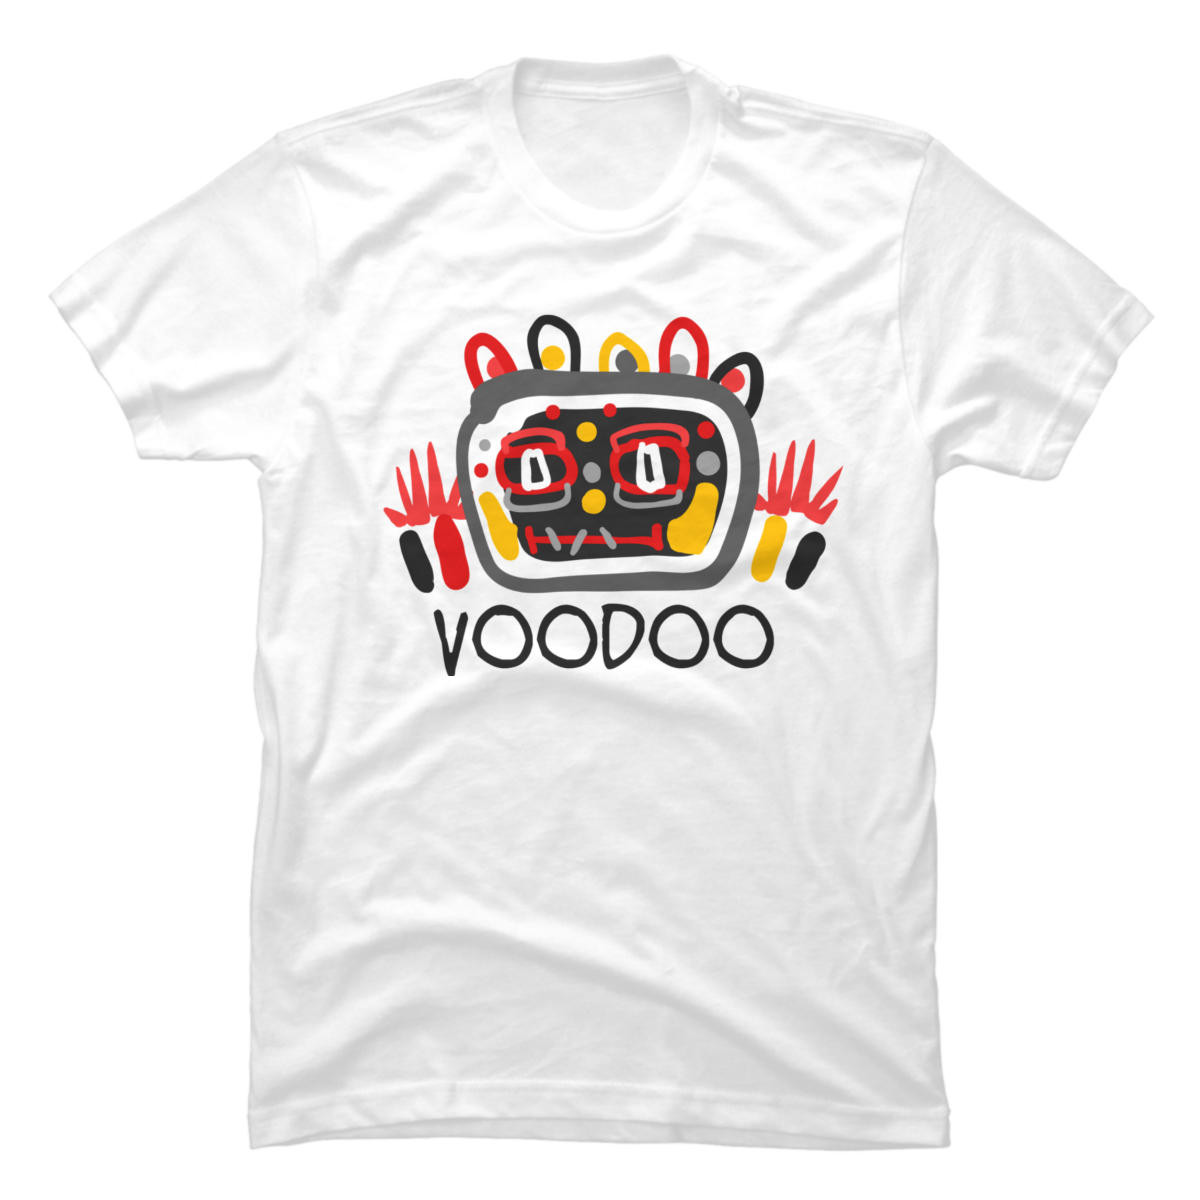 voodoo t shirt